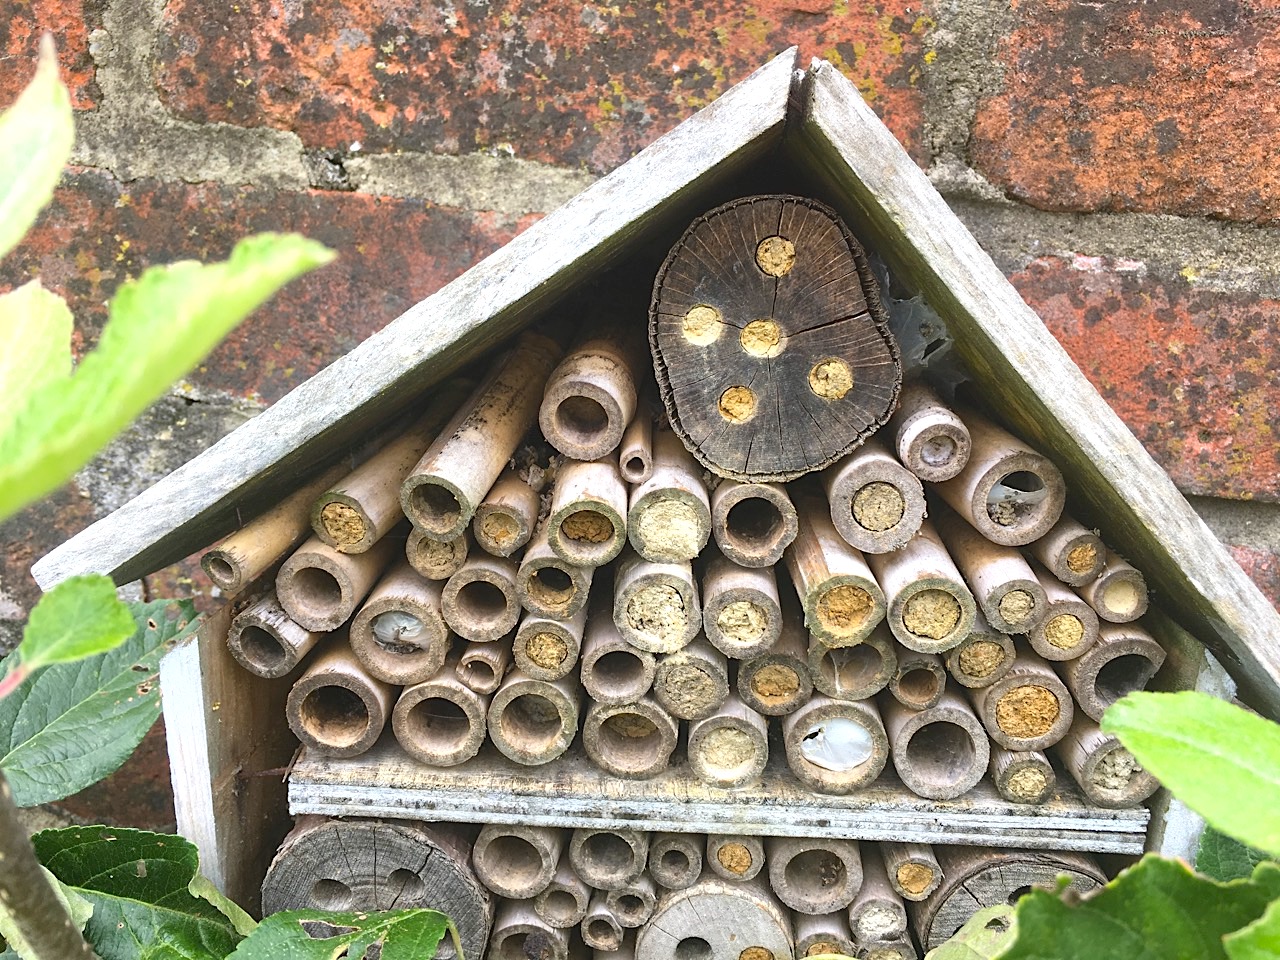 Bee House & denizens, Dorset